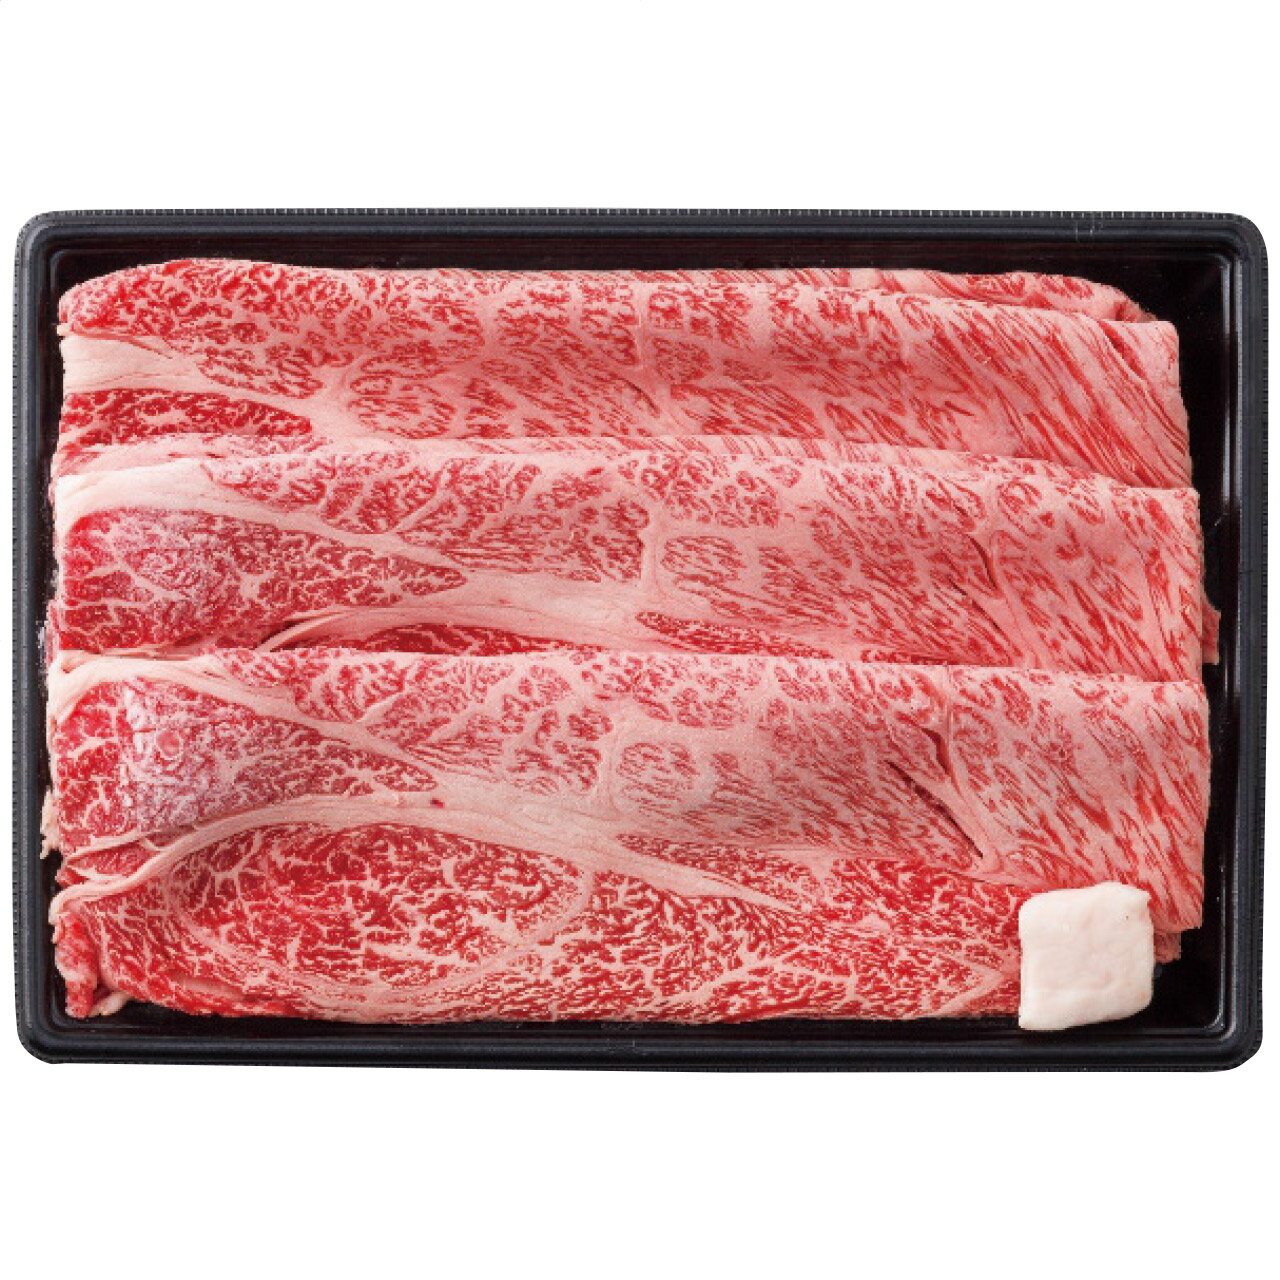 近江牛 肩ロースすき焼き(約300g) 千成亭 日本製 [APD2268-084 産直]| 肉食品 精肉・肉加工品 肉類